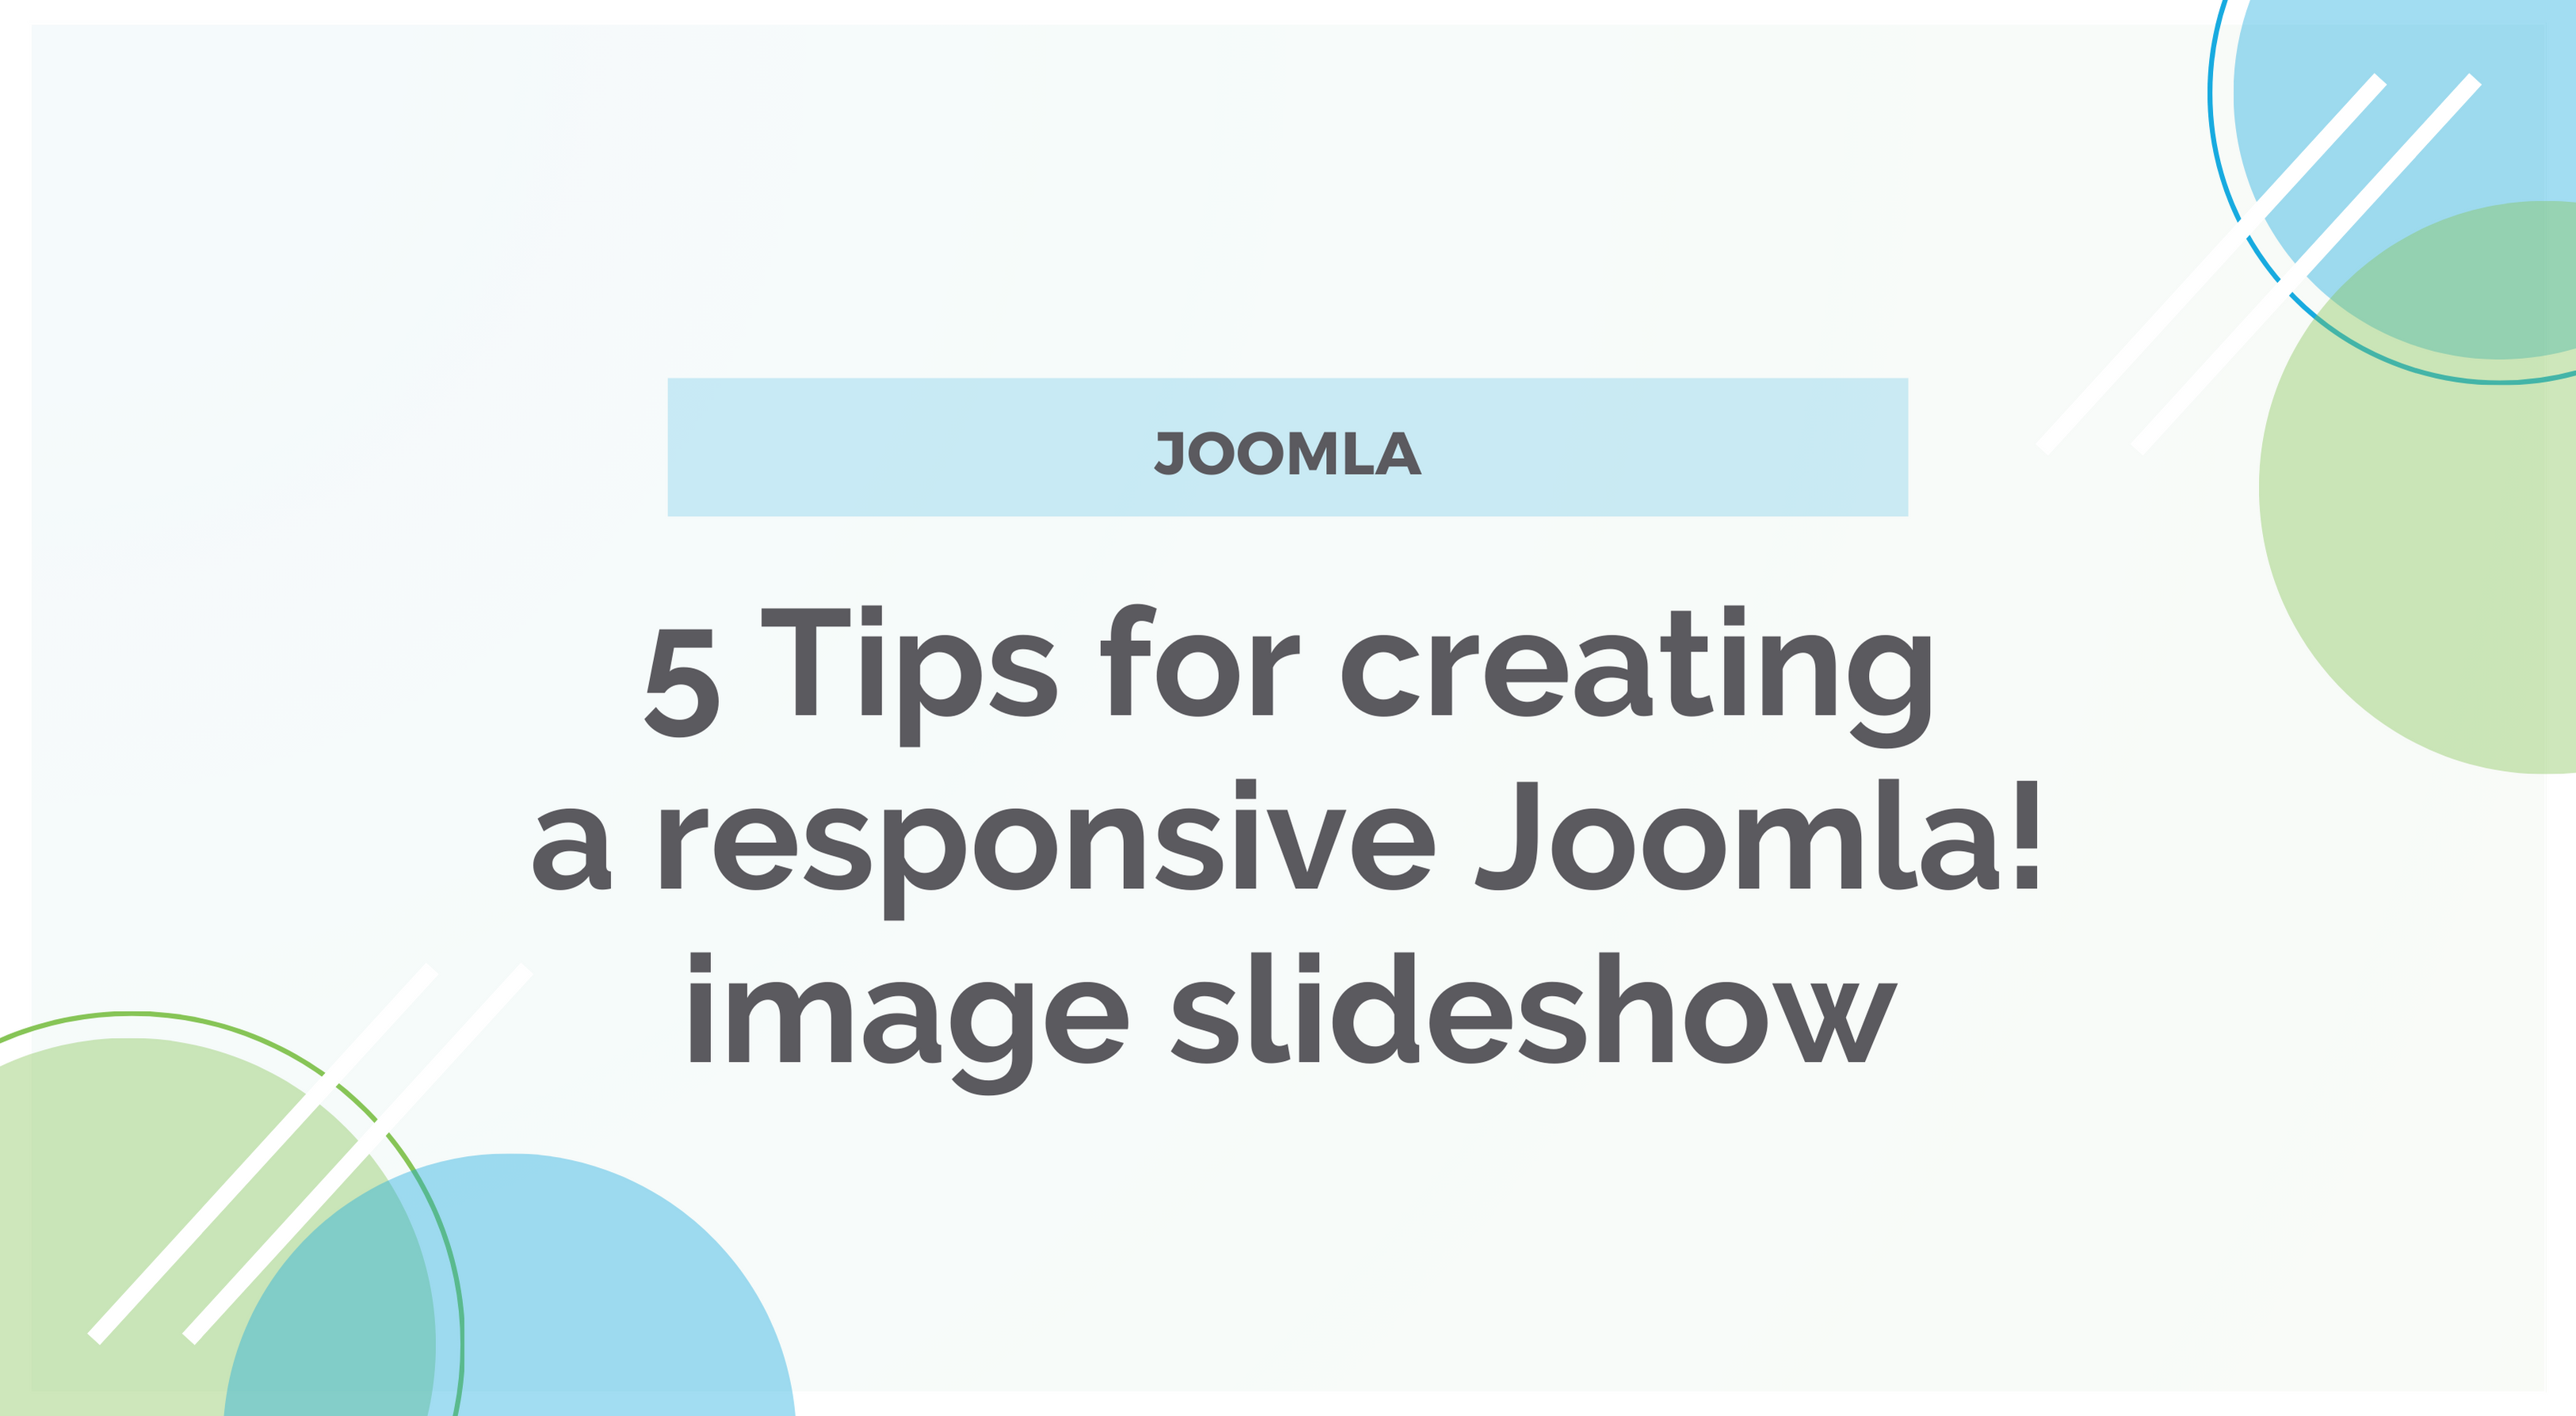 5 Tips for creating a responsive Joomla! image slideshow